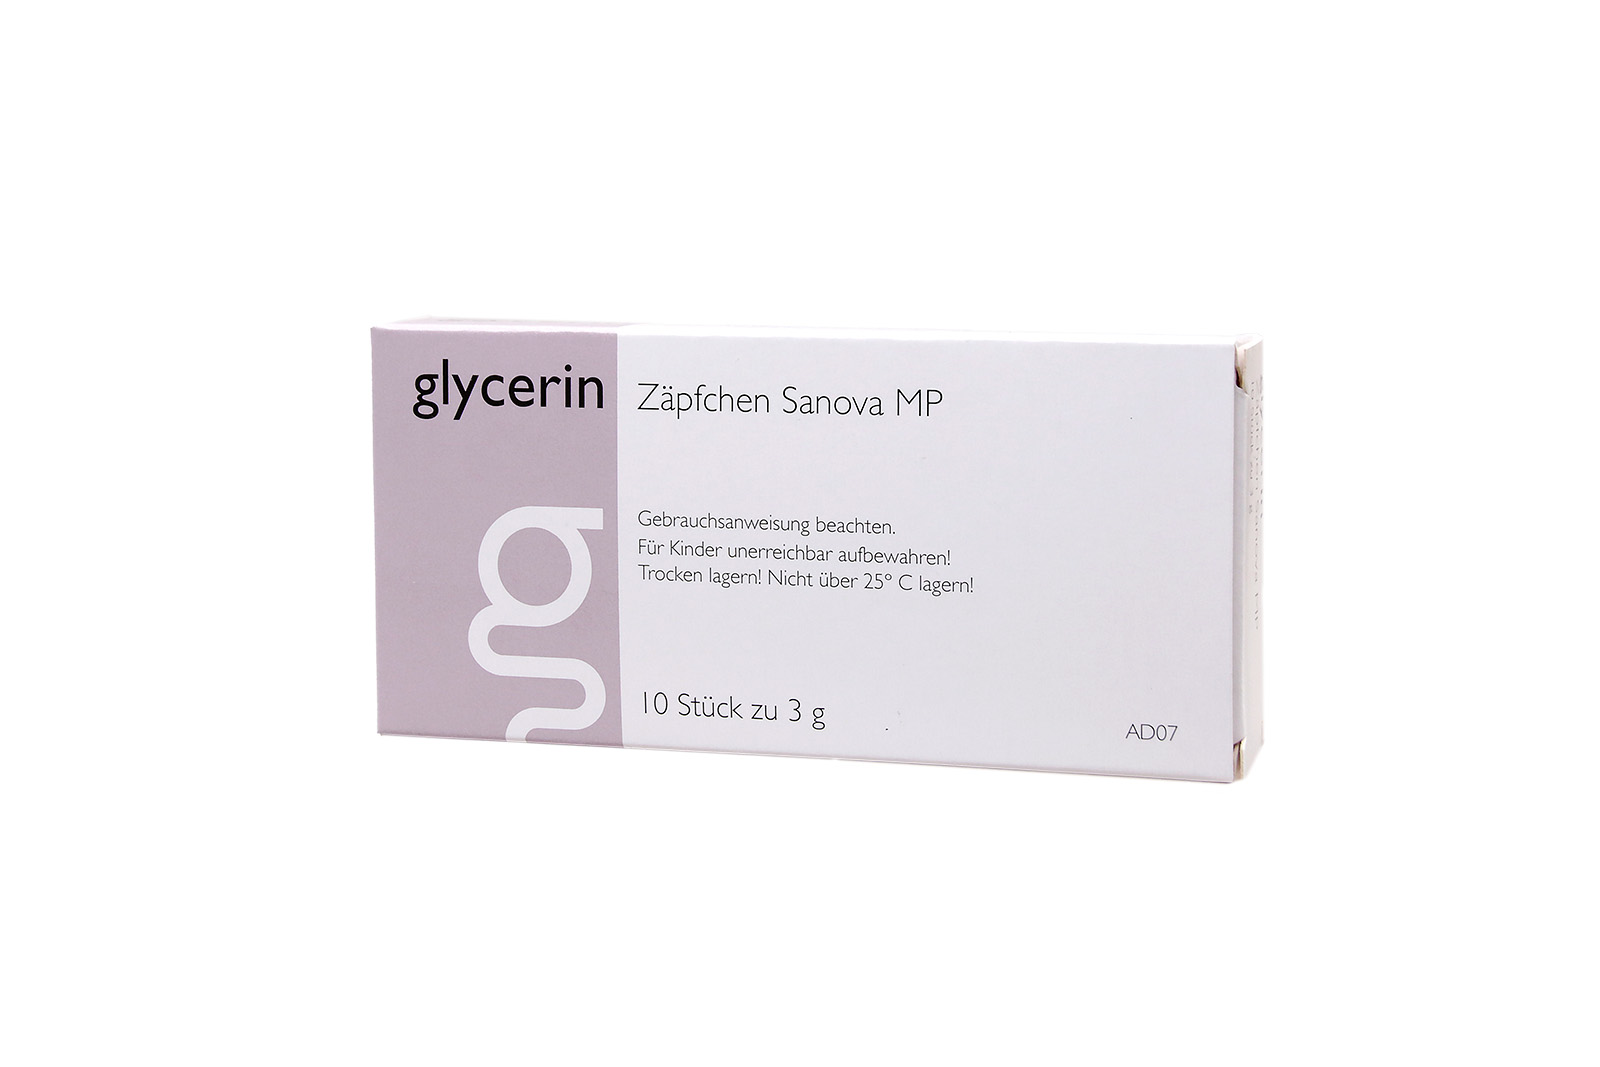 Glycerin Zäpfchen "Sanova" MP 3g